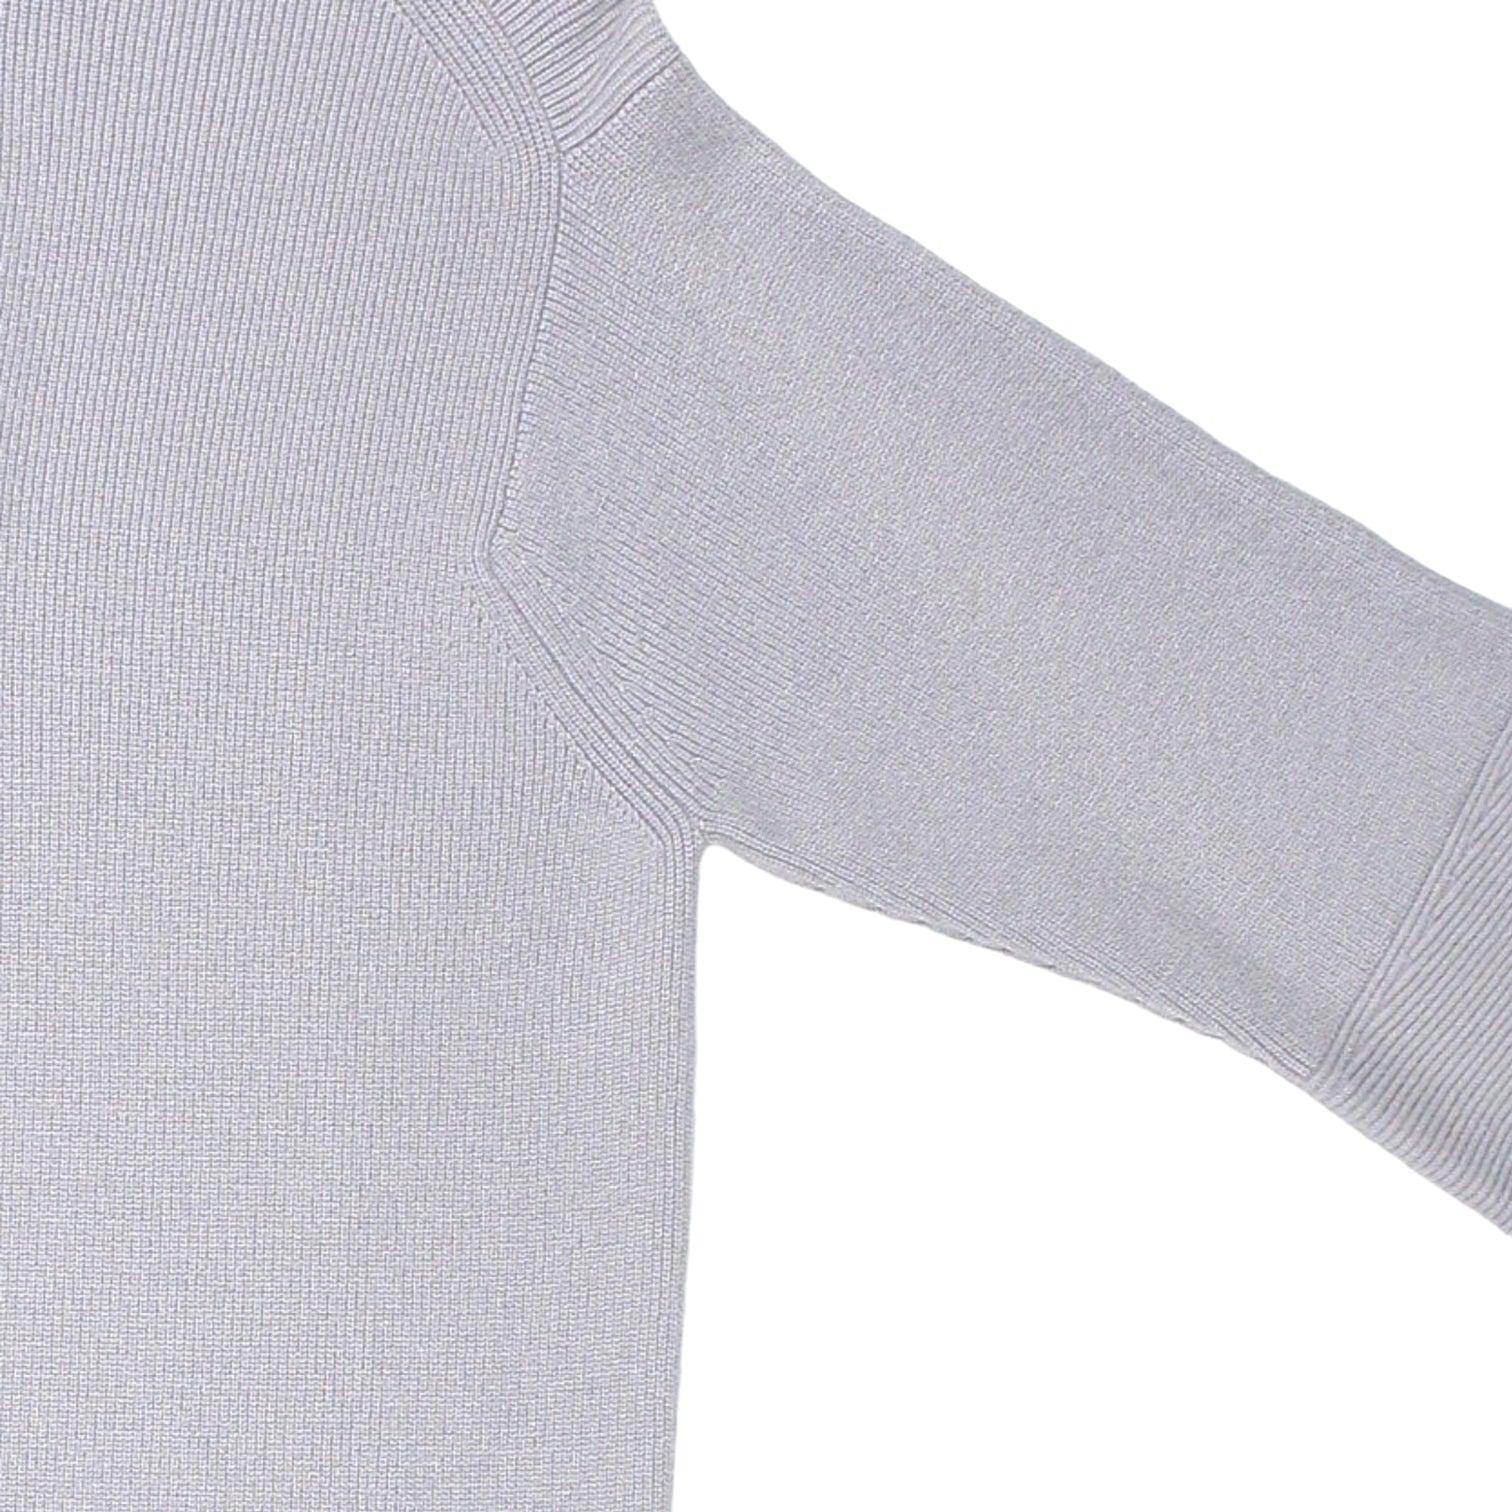 Calvin Klein Grey 1/4 Zip Knit Sweater